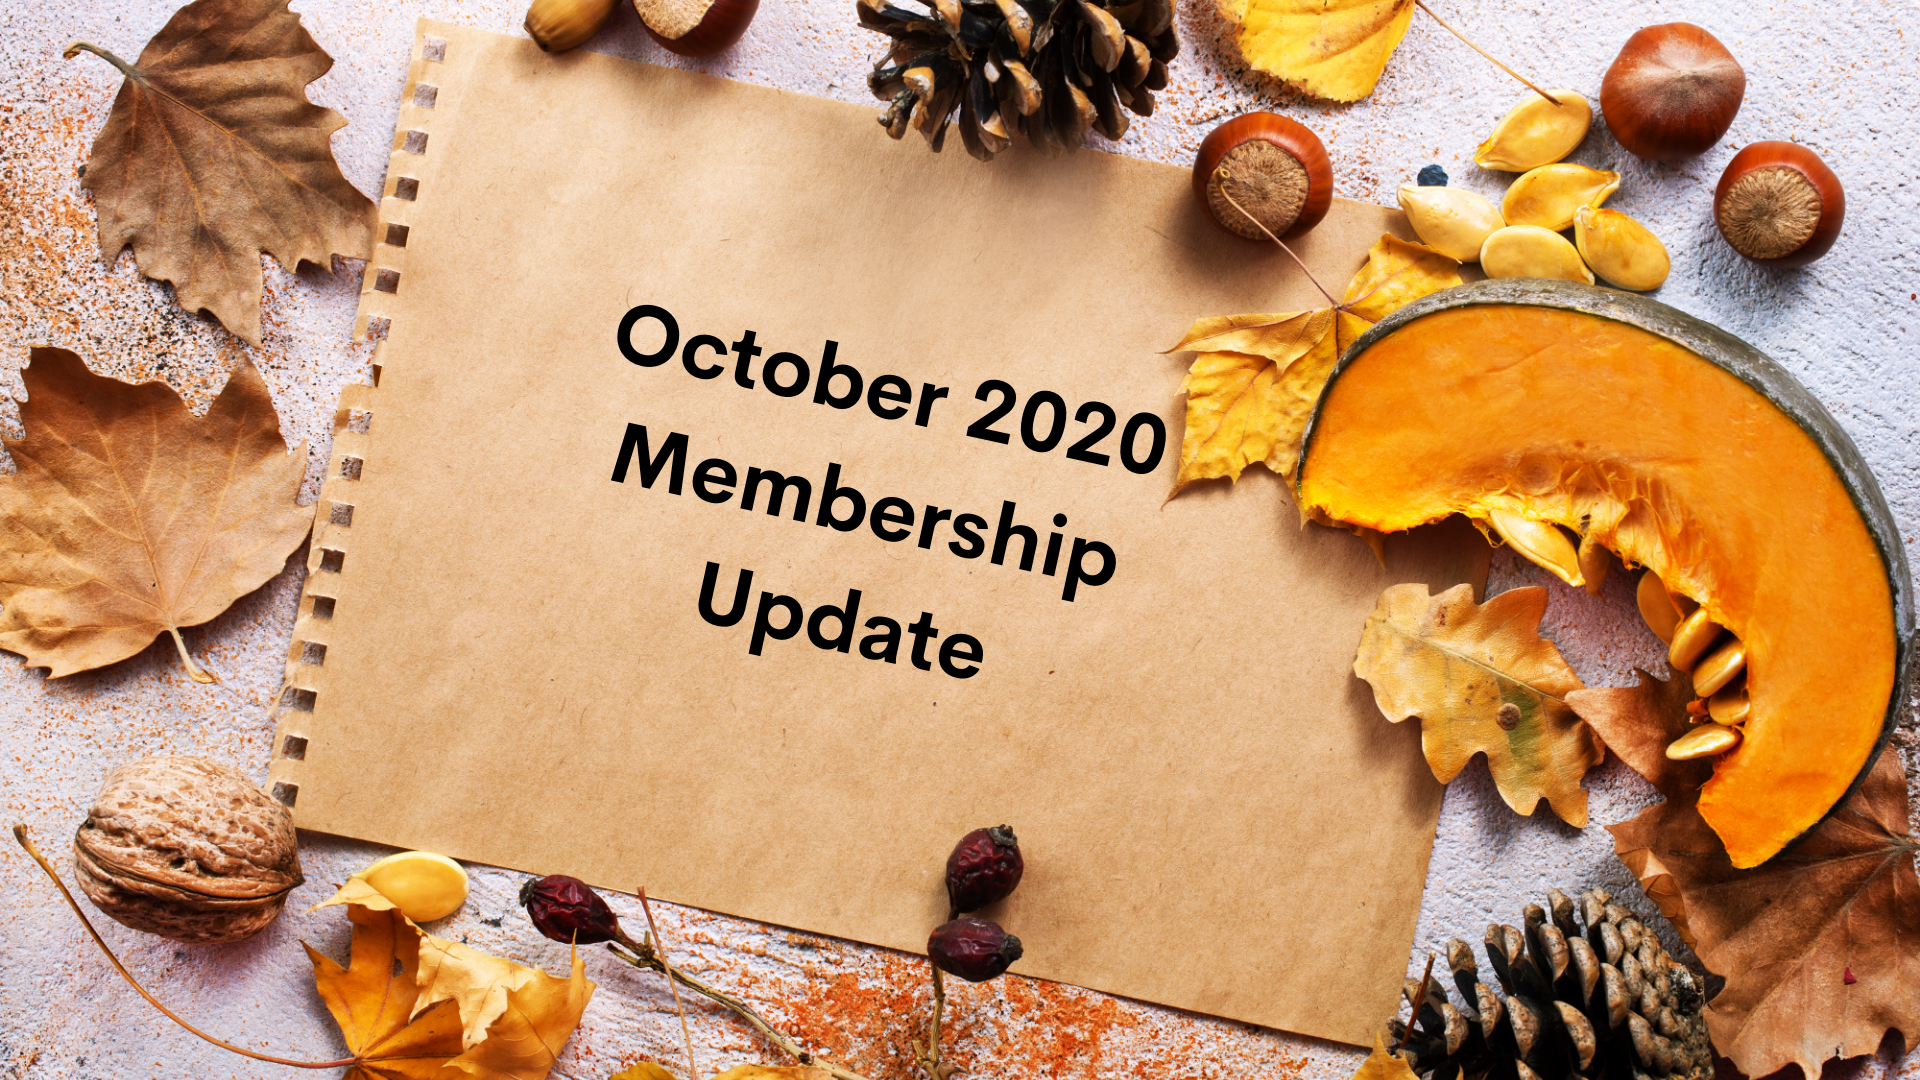 Membership Update: October 2020